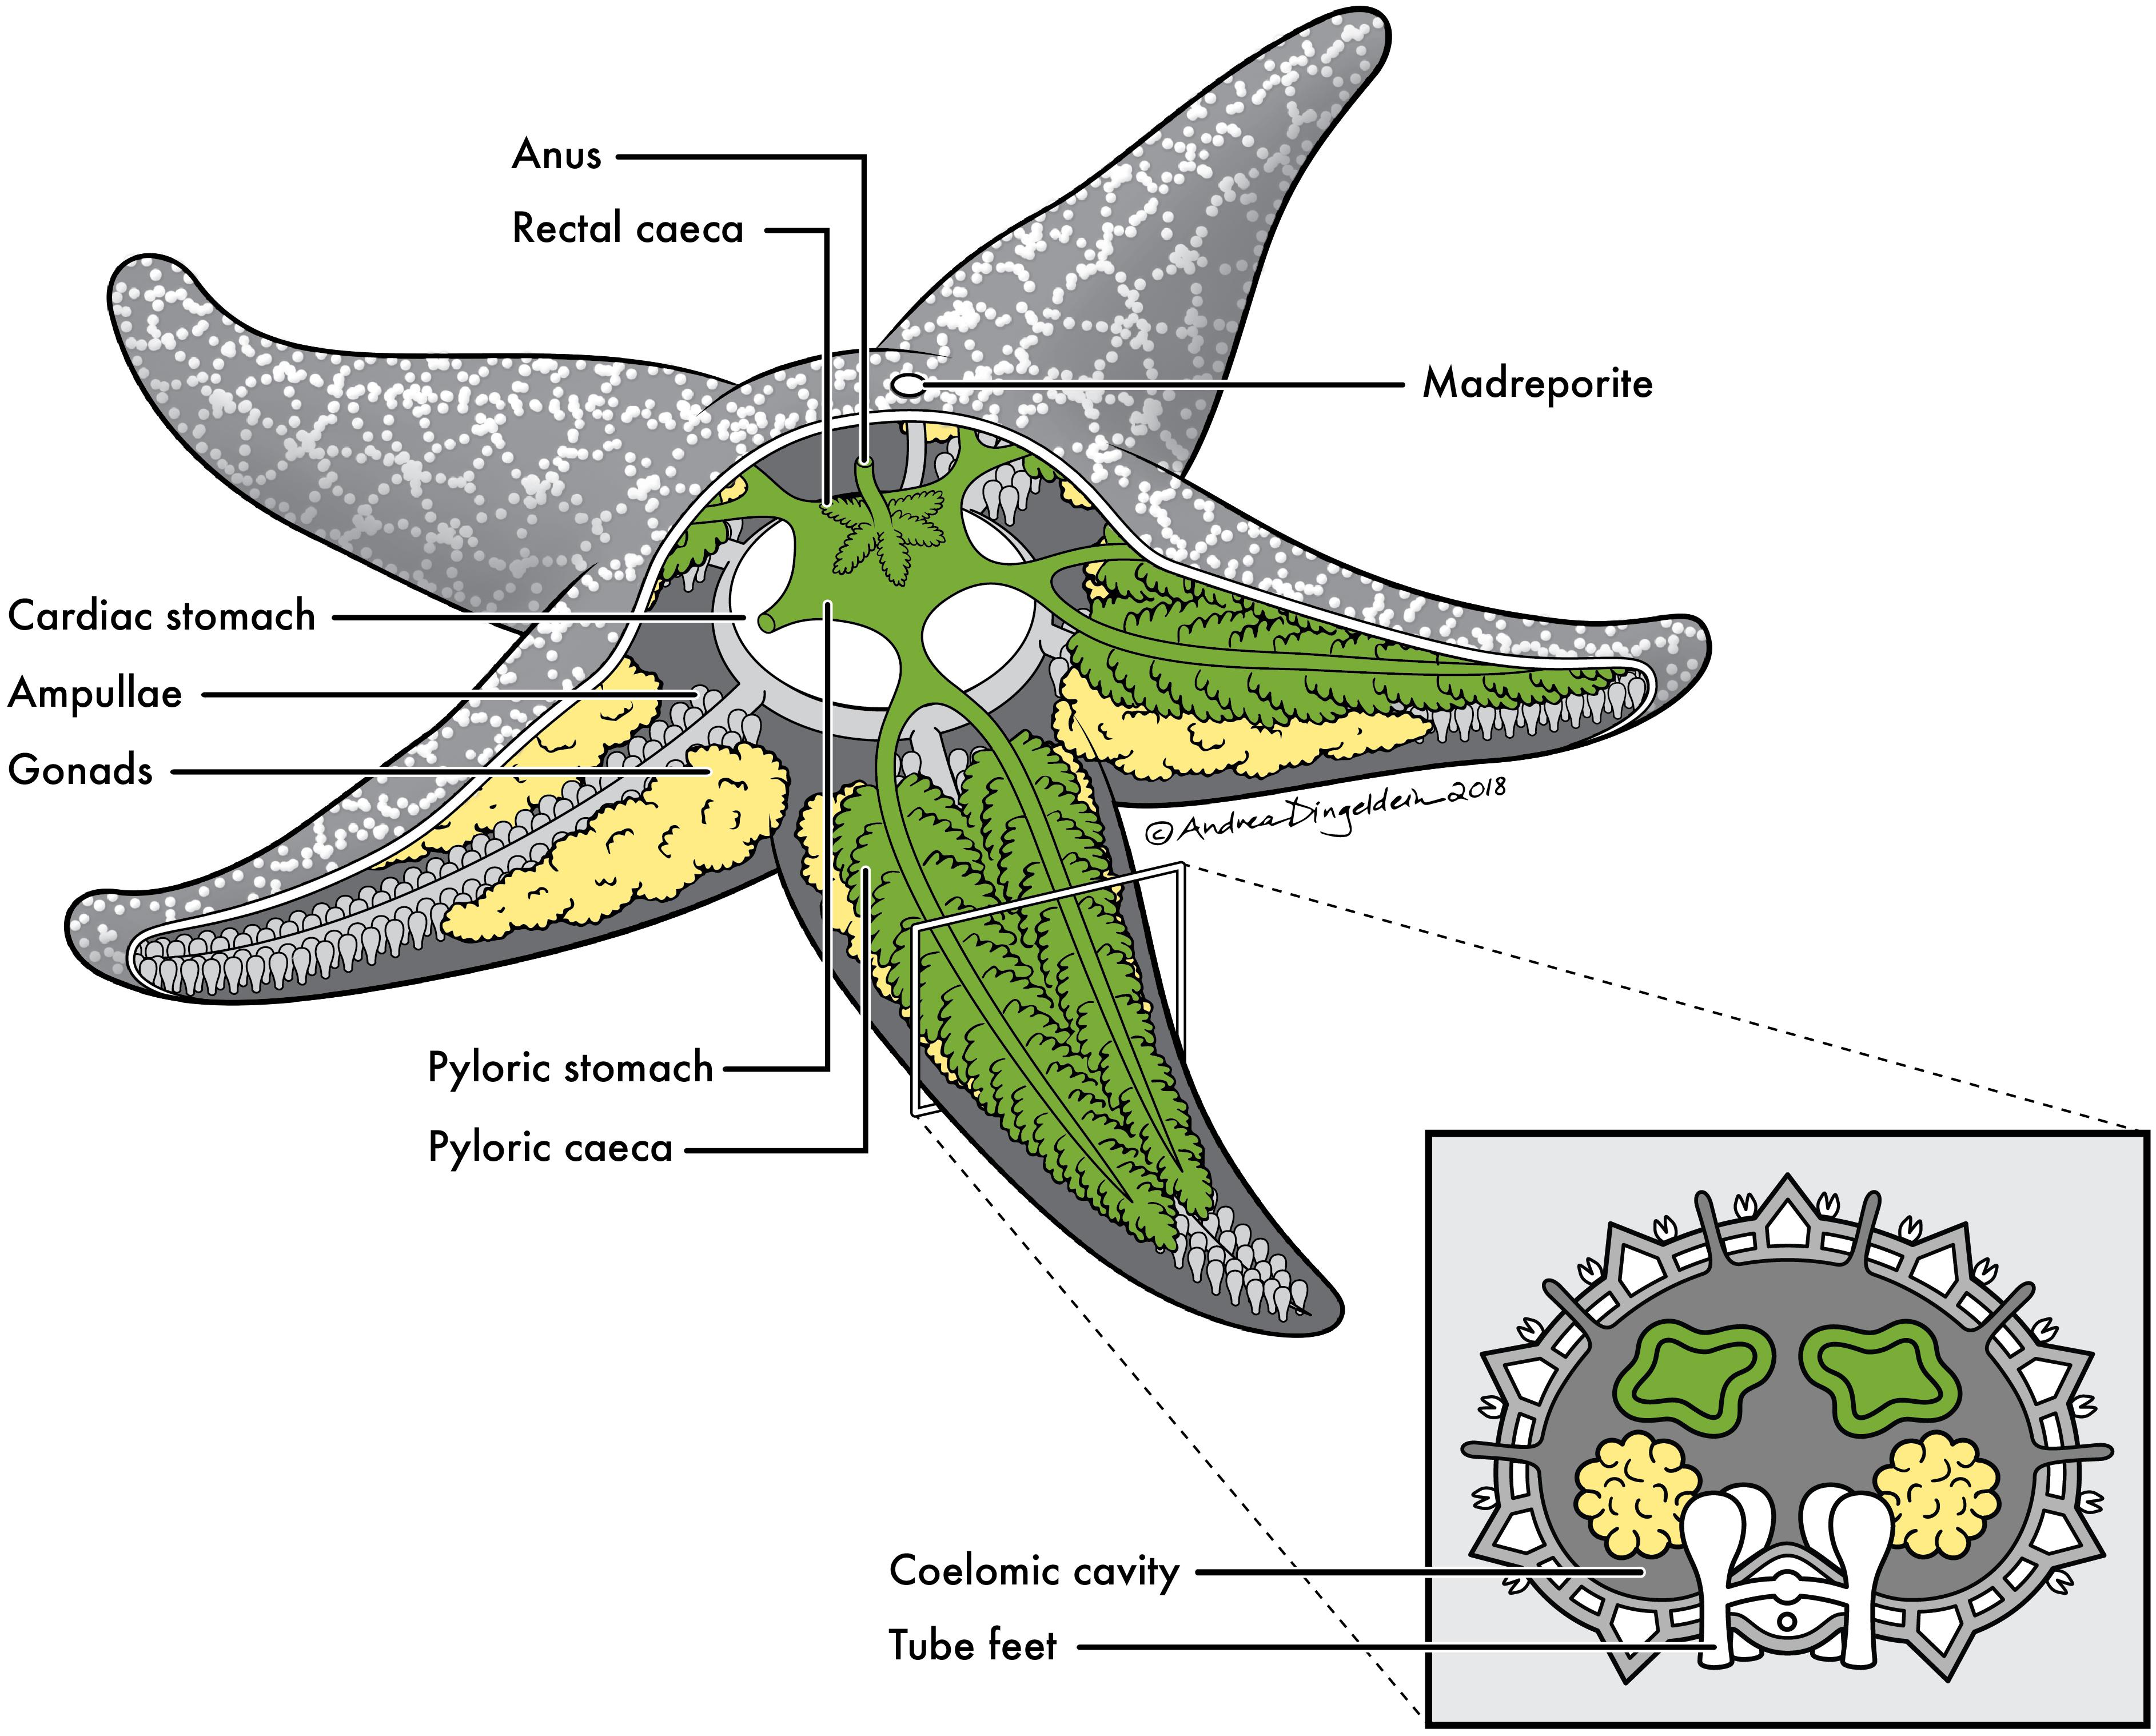 brittle star anatomy